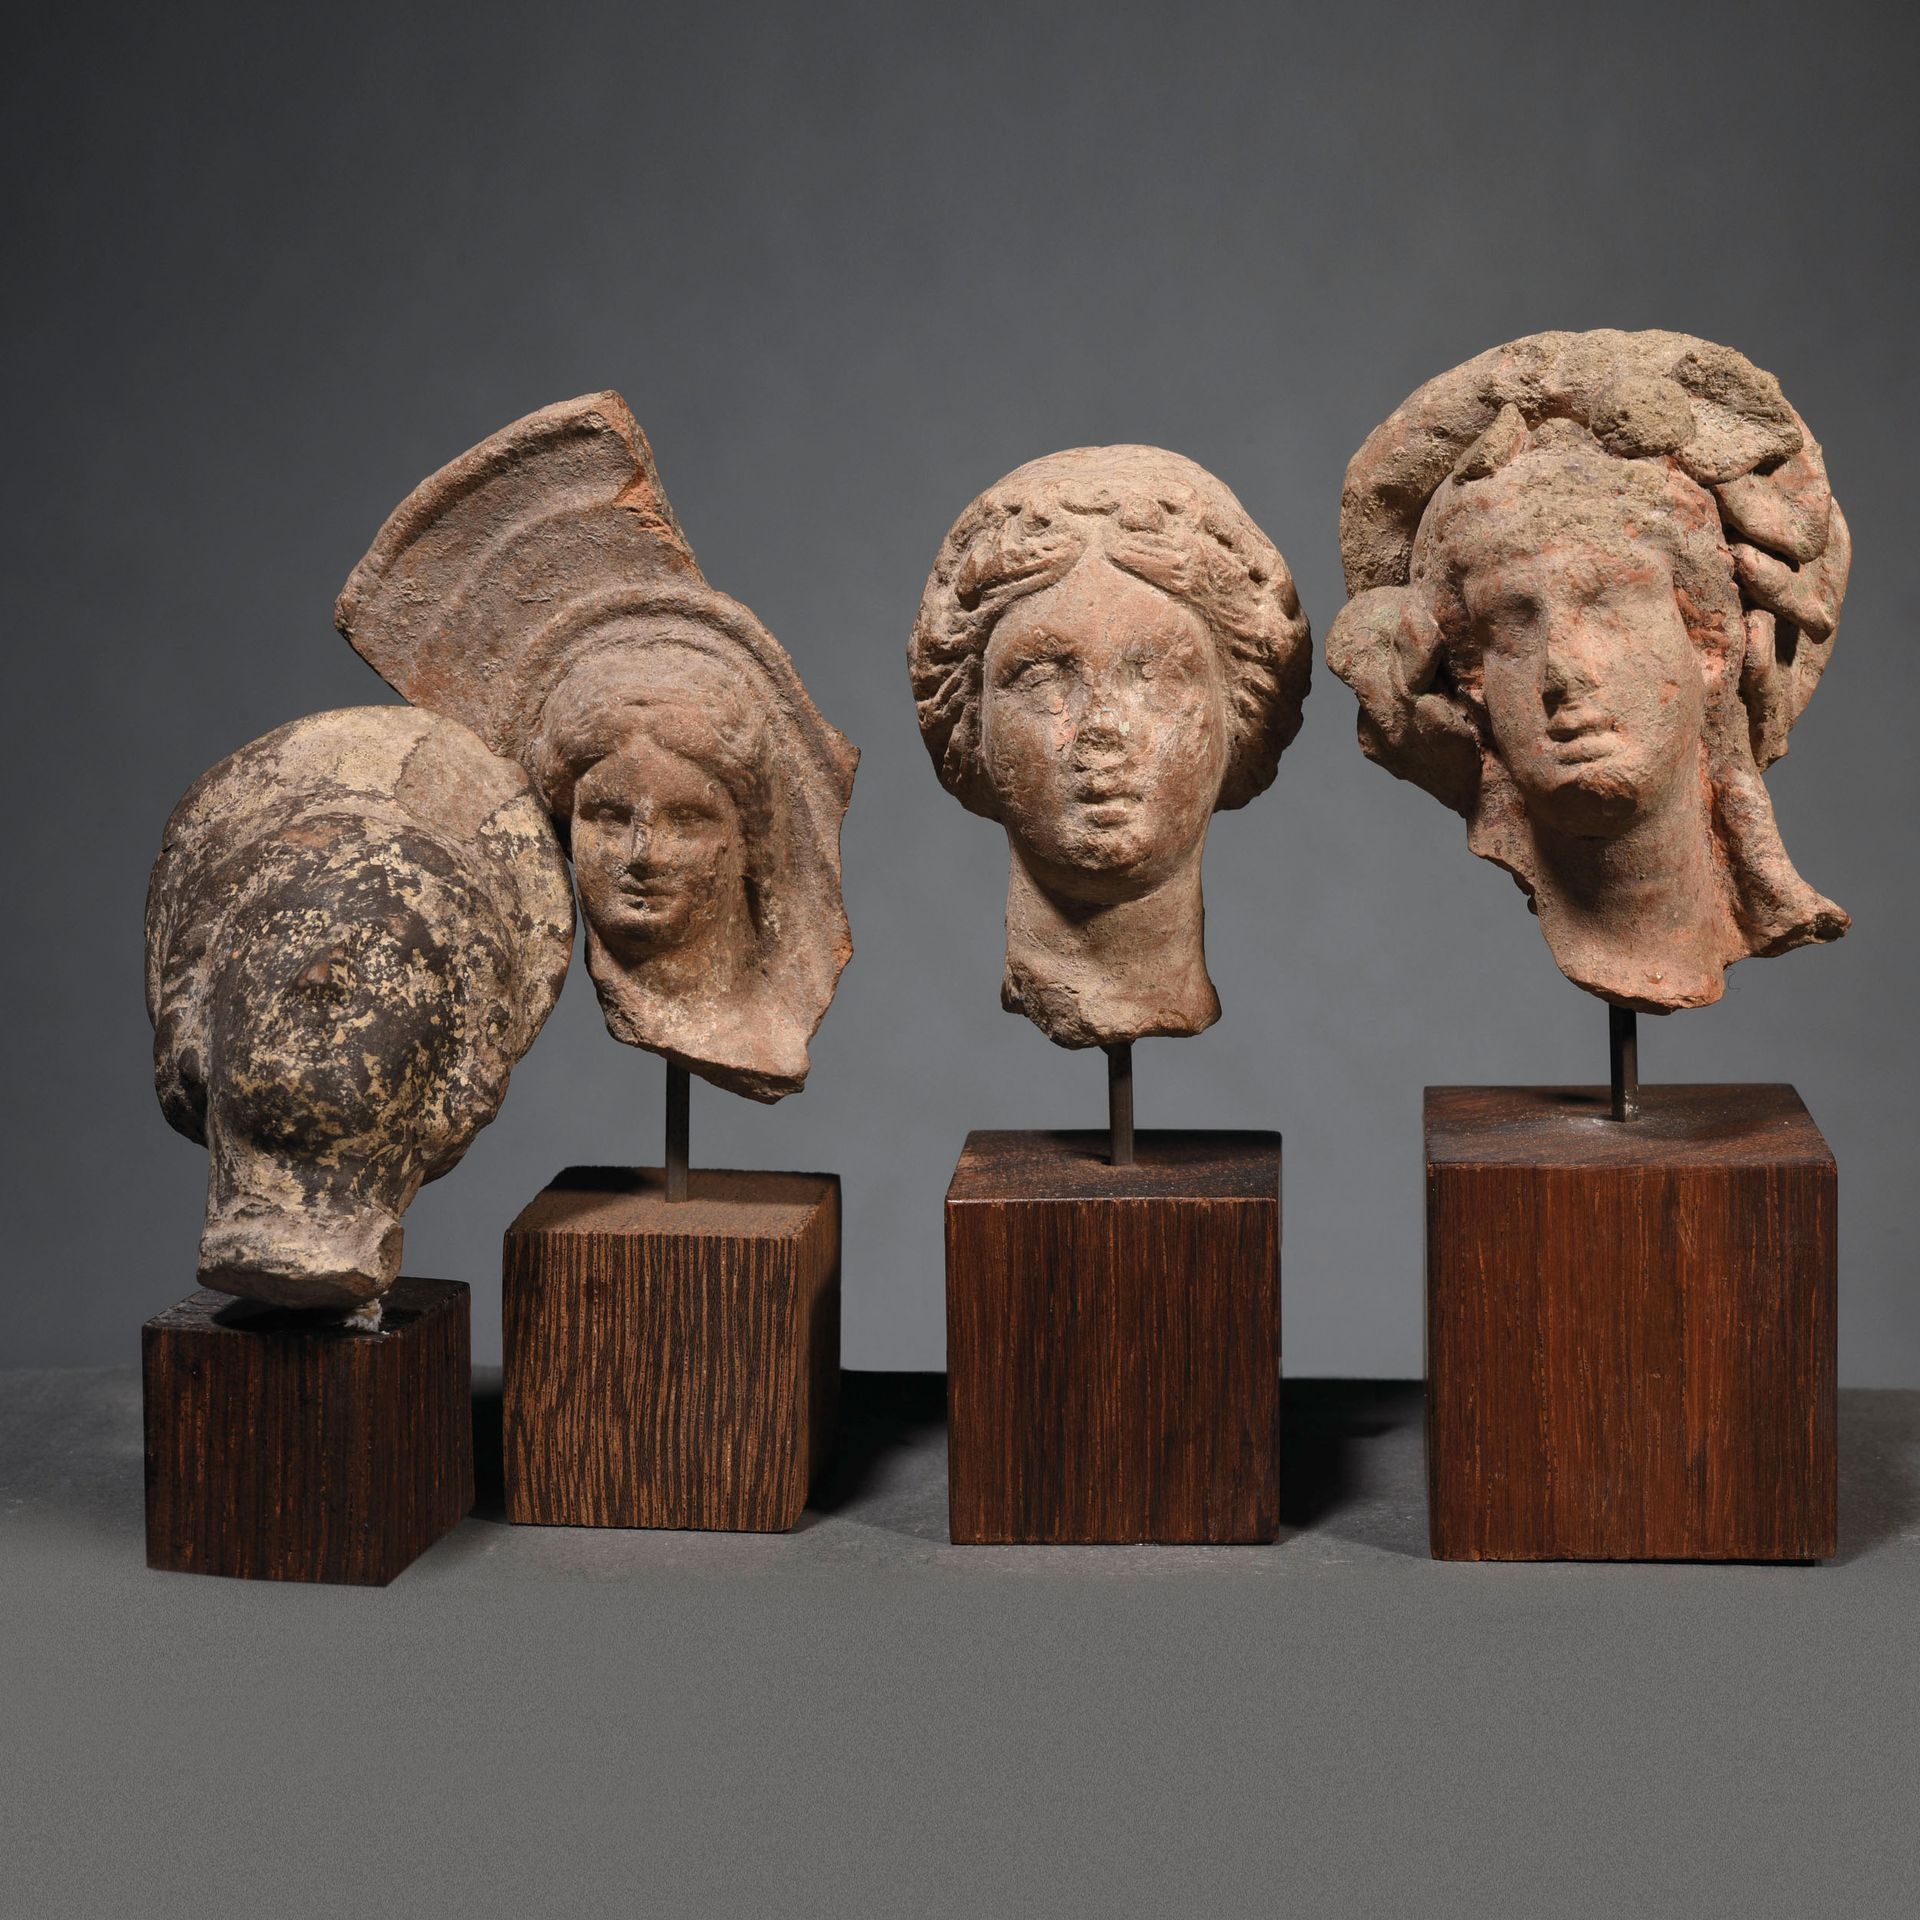 Null 一套4个前卫的云台

希腊化的艺术

在陶土中



出处

前L先生的收藏，1980年代。



一批4个希腊化的陶俑头像